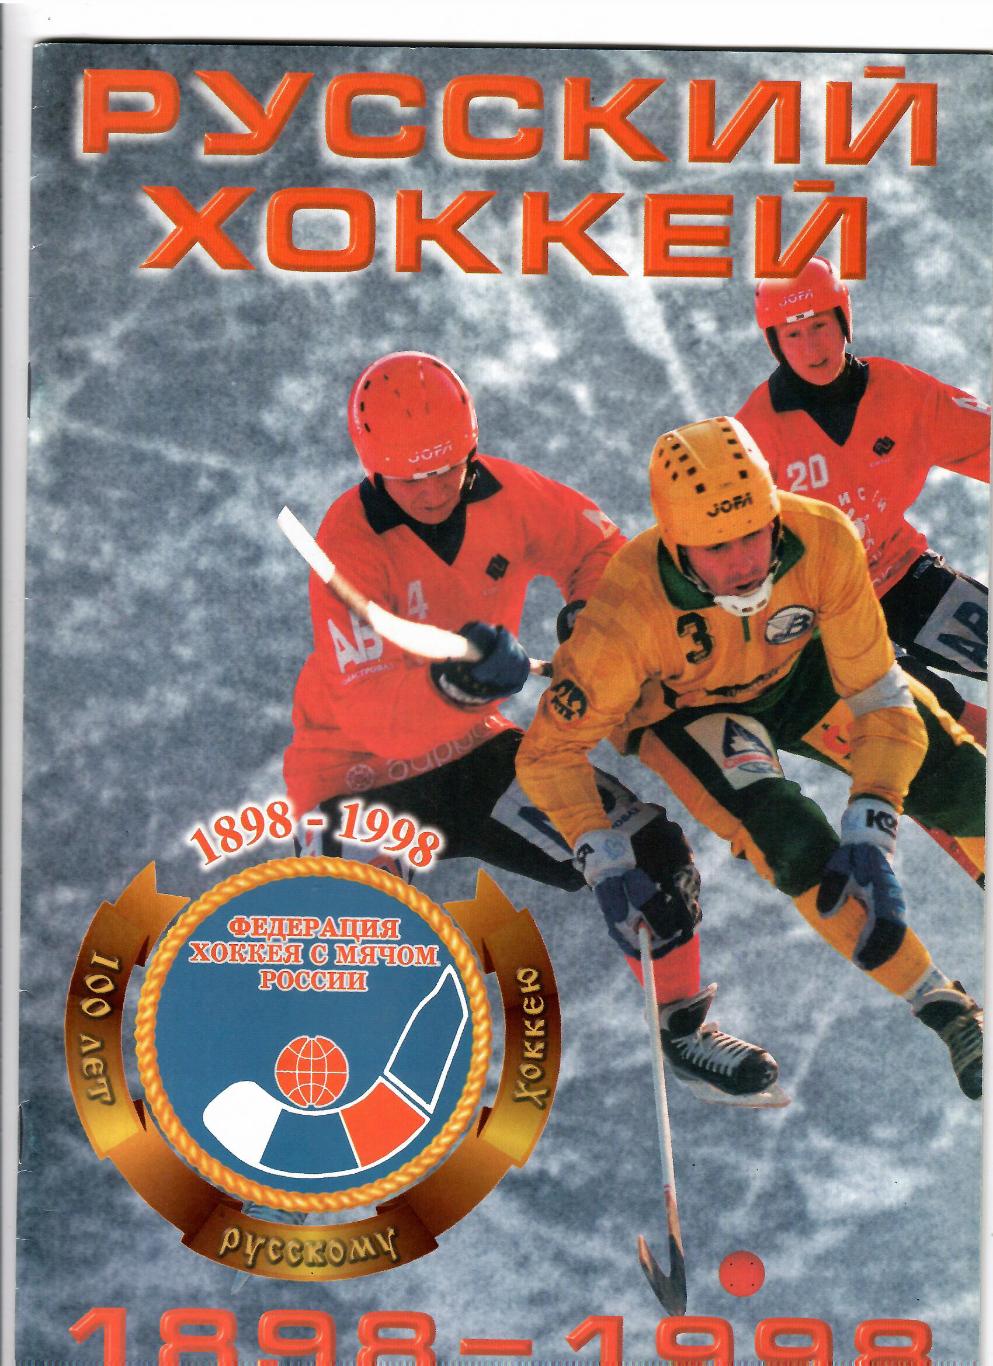 Хоккей с мячомРусский хоккей 1898-1998